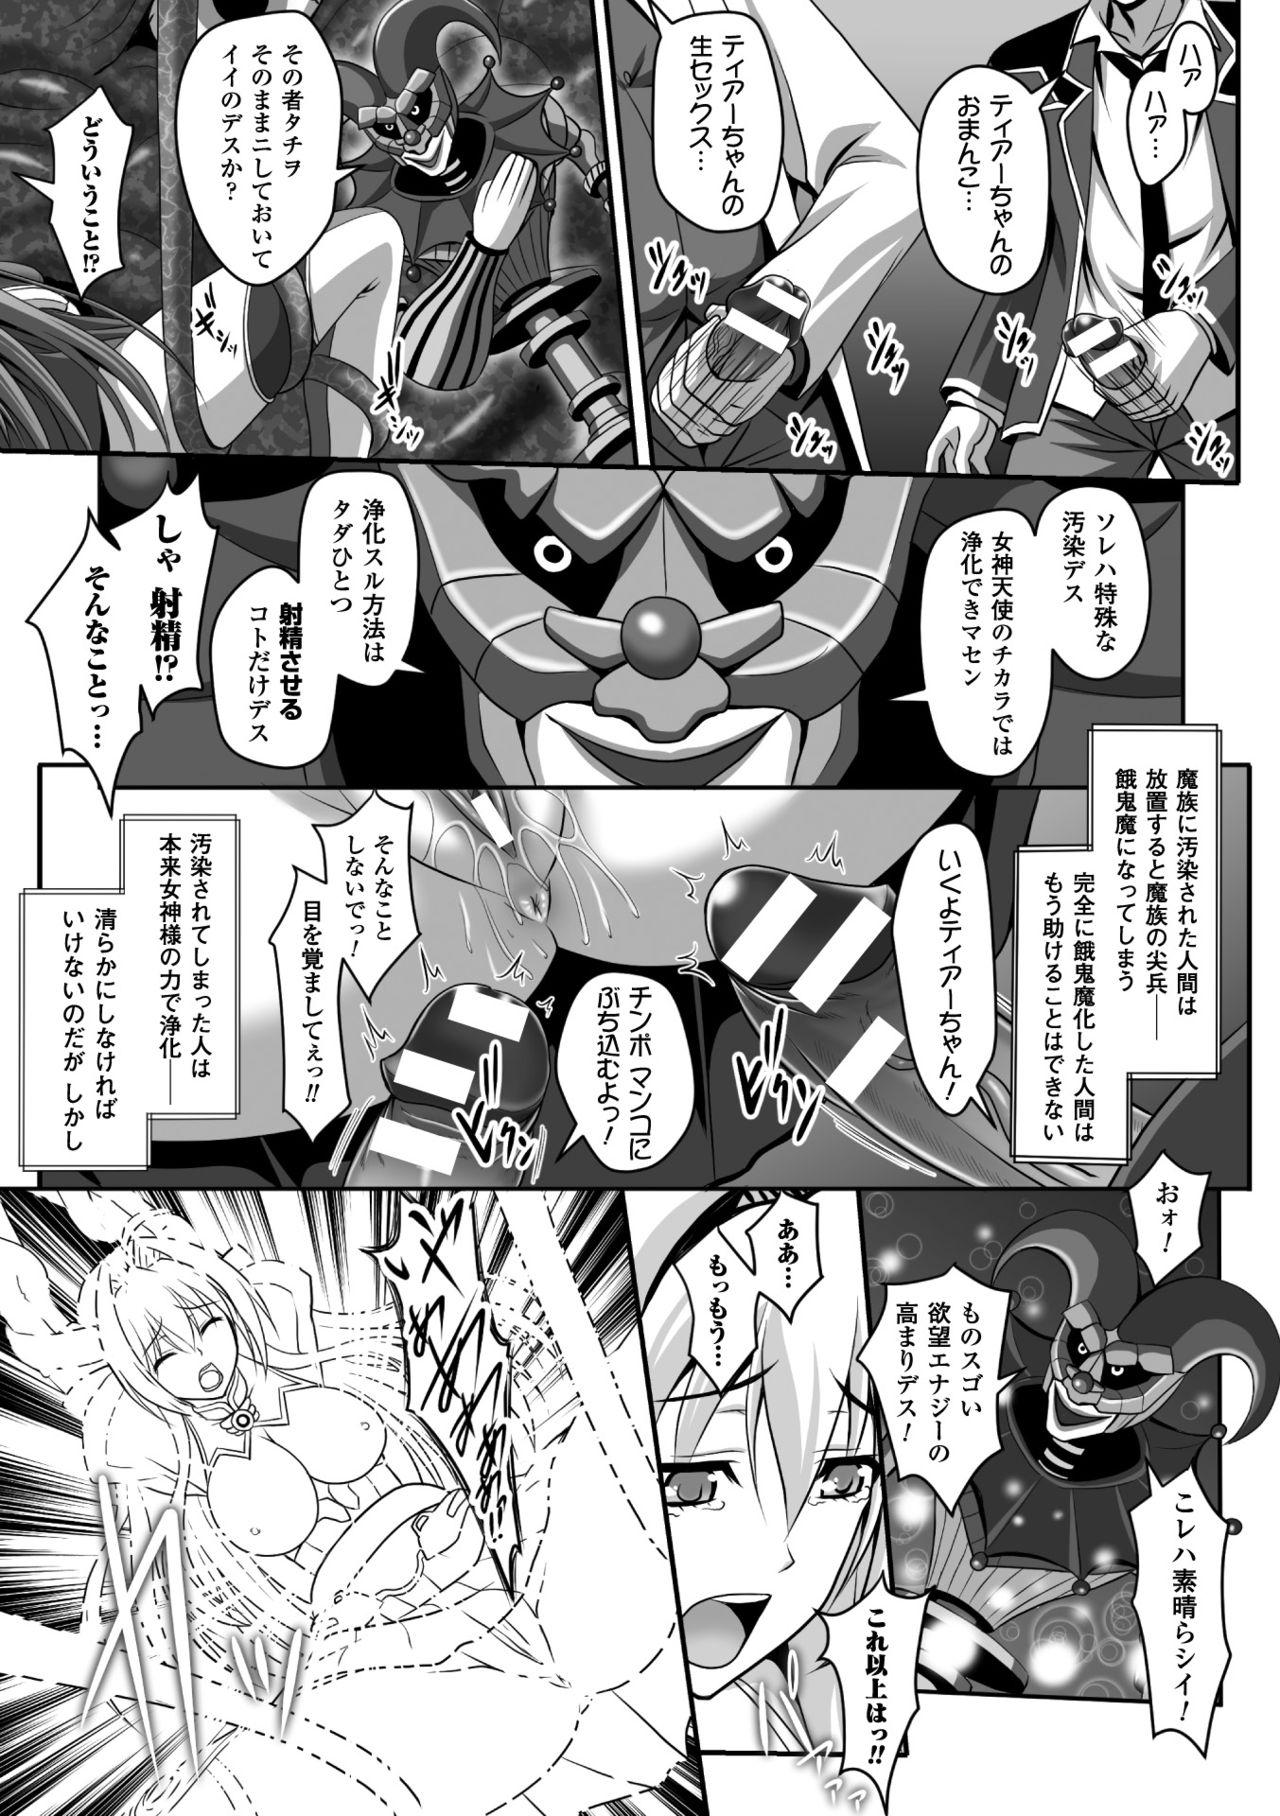 Doggy Seigi no Heroine Kangoku File Vol. 5 - Kuroinu kedakaki seijo wa hakudaku ni somaru Shecock - Page 9